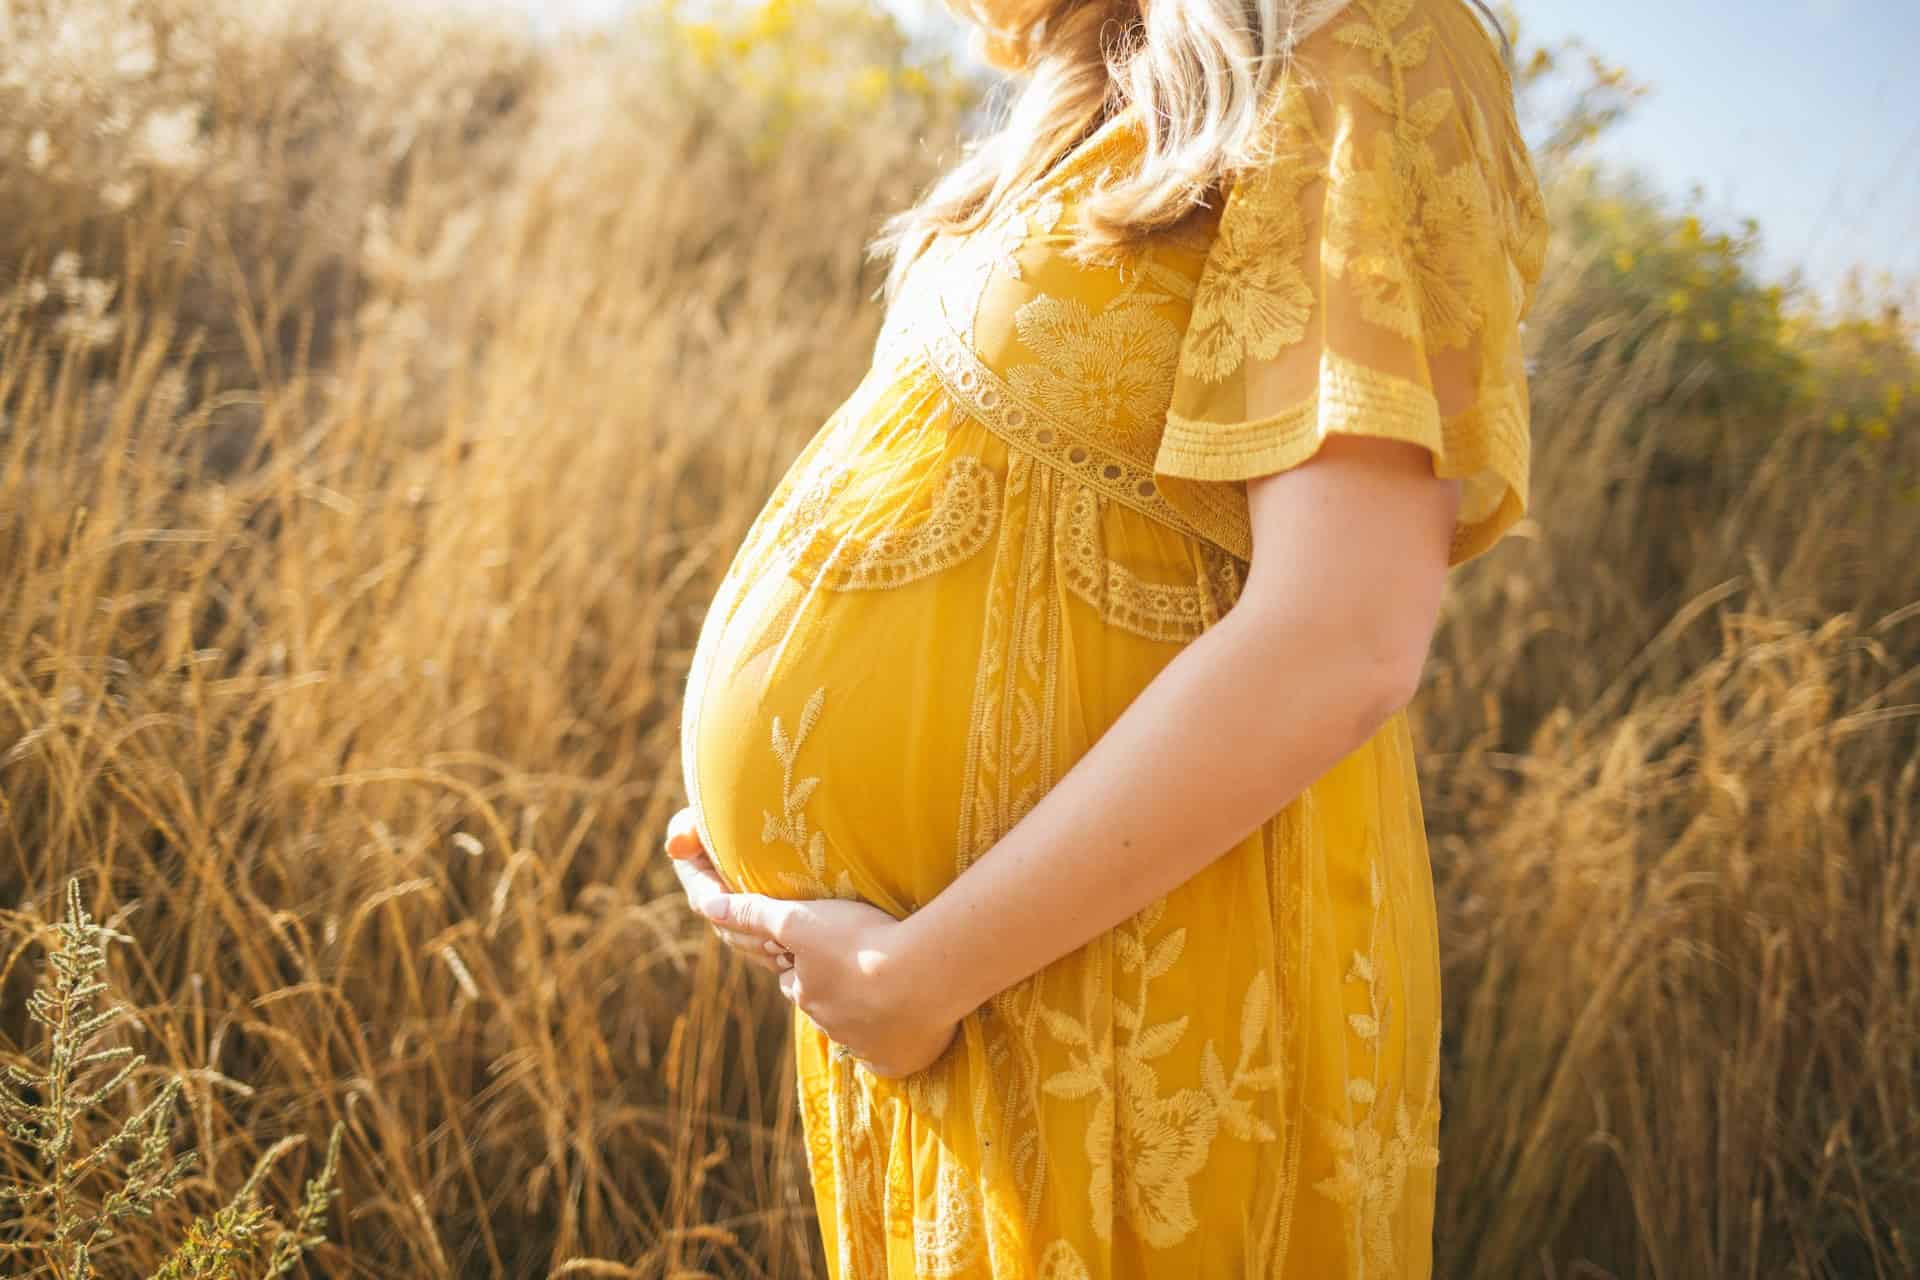 vernis semi permanent grossesse : femme enceinte dans un champs